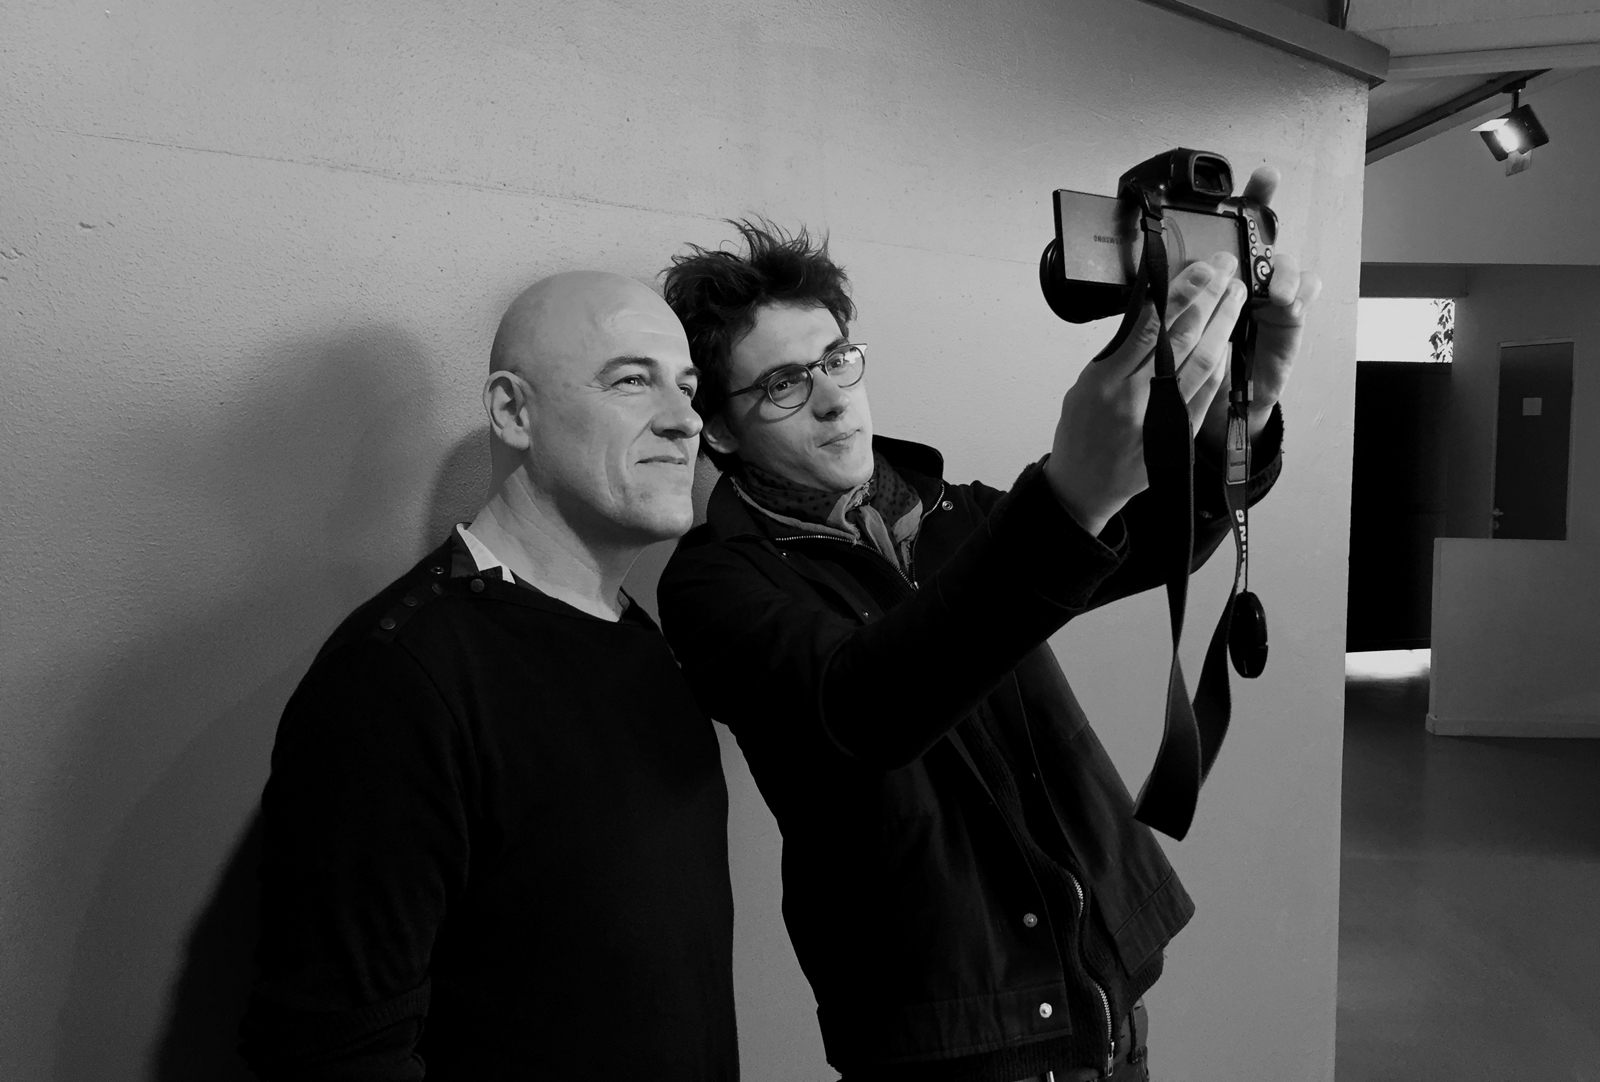 Dominique A et Pierre Guénard radio elvis séance photo selfie pour usofparis blog Printemps de Bourges 2016 40 ans festival musique